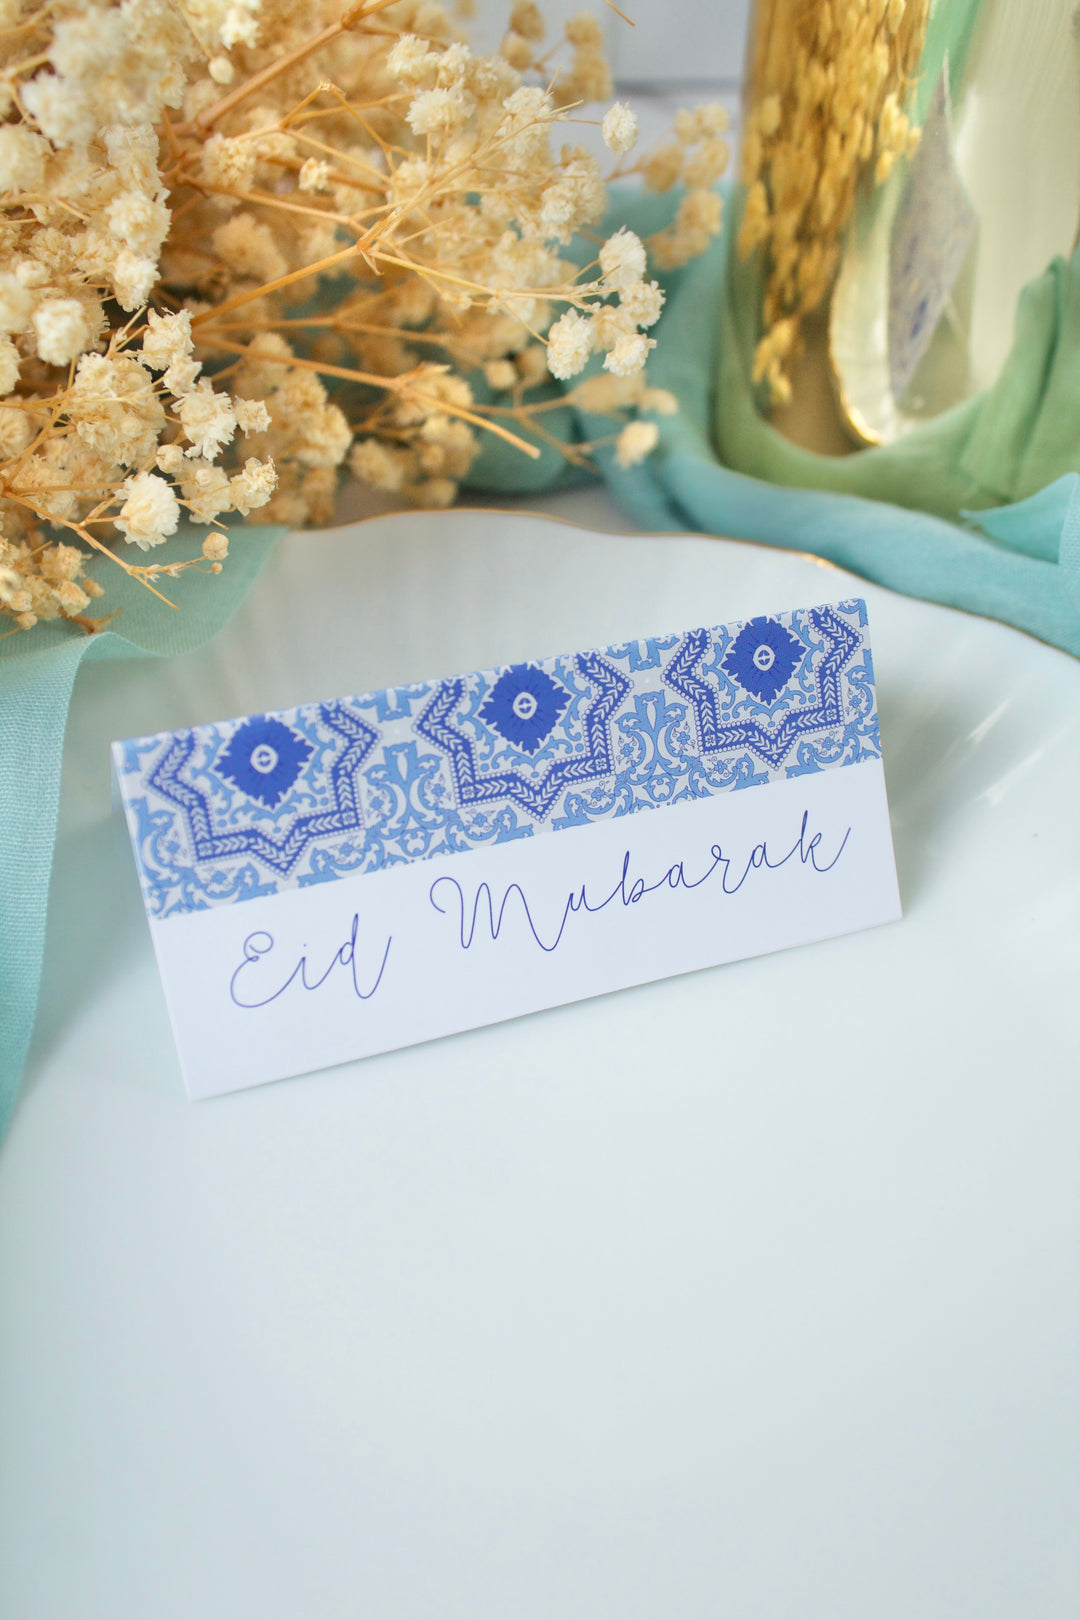 Carton sachet de bonbons - Eid Mubarak mosaïques bleues - 25pcs